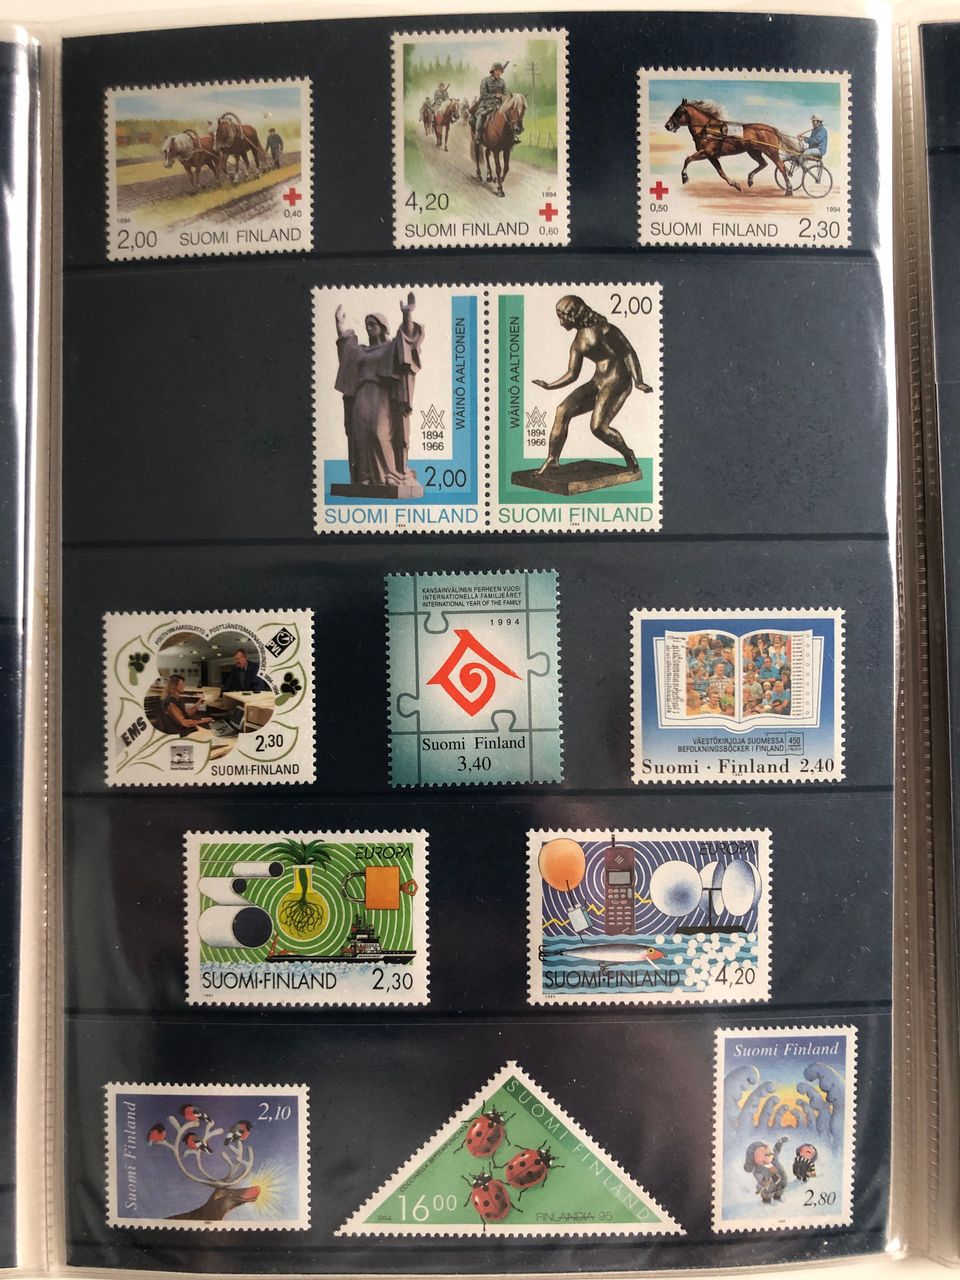 Suomal. postimerkkejä julkaisuarkeissaan ja teemakansioissa 1987-1998